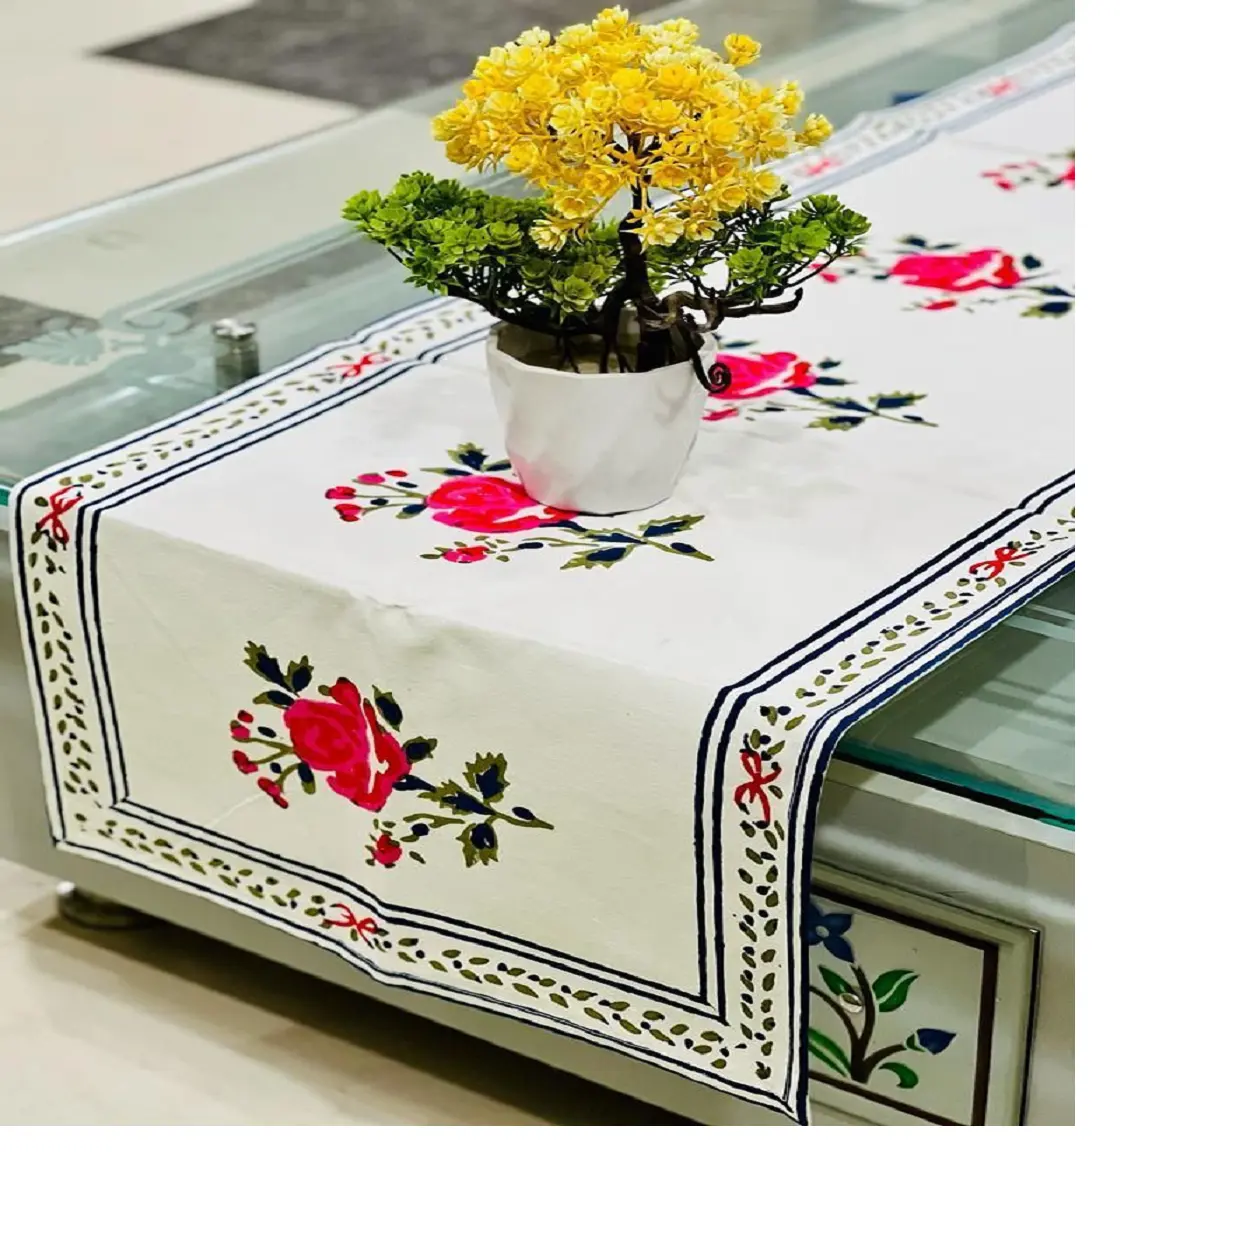 カスタムメイドの綿100% 生地、赤い花柄の6人掛けテーブル用のホーム & ホテル用ハンドブロックプリントテーブルランナー